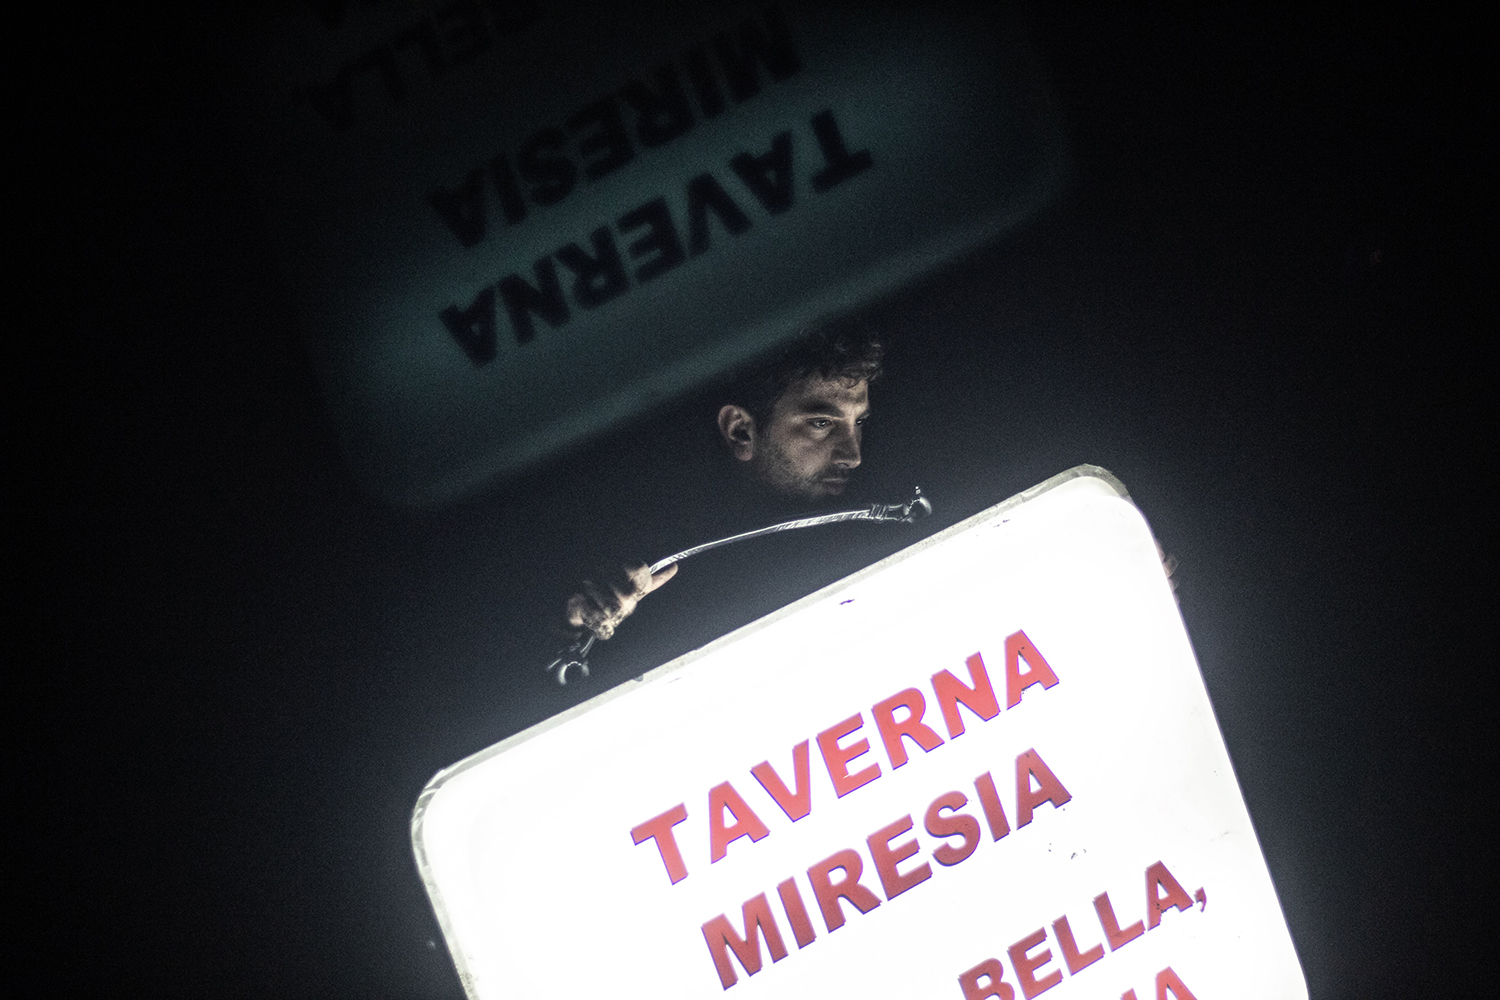 Taverna Miresia – Mario, Bella, Anastasia